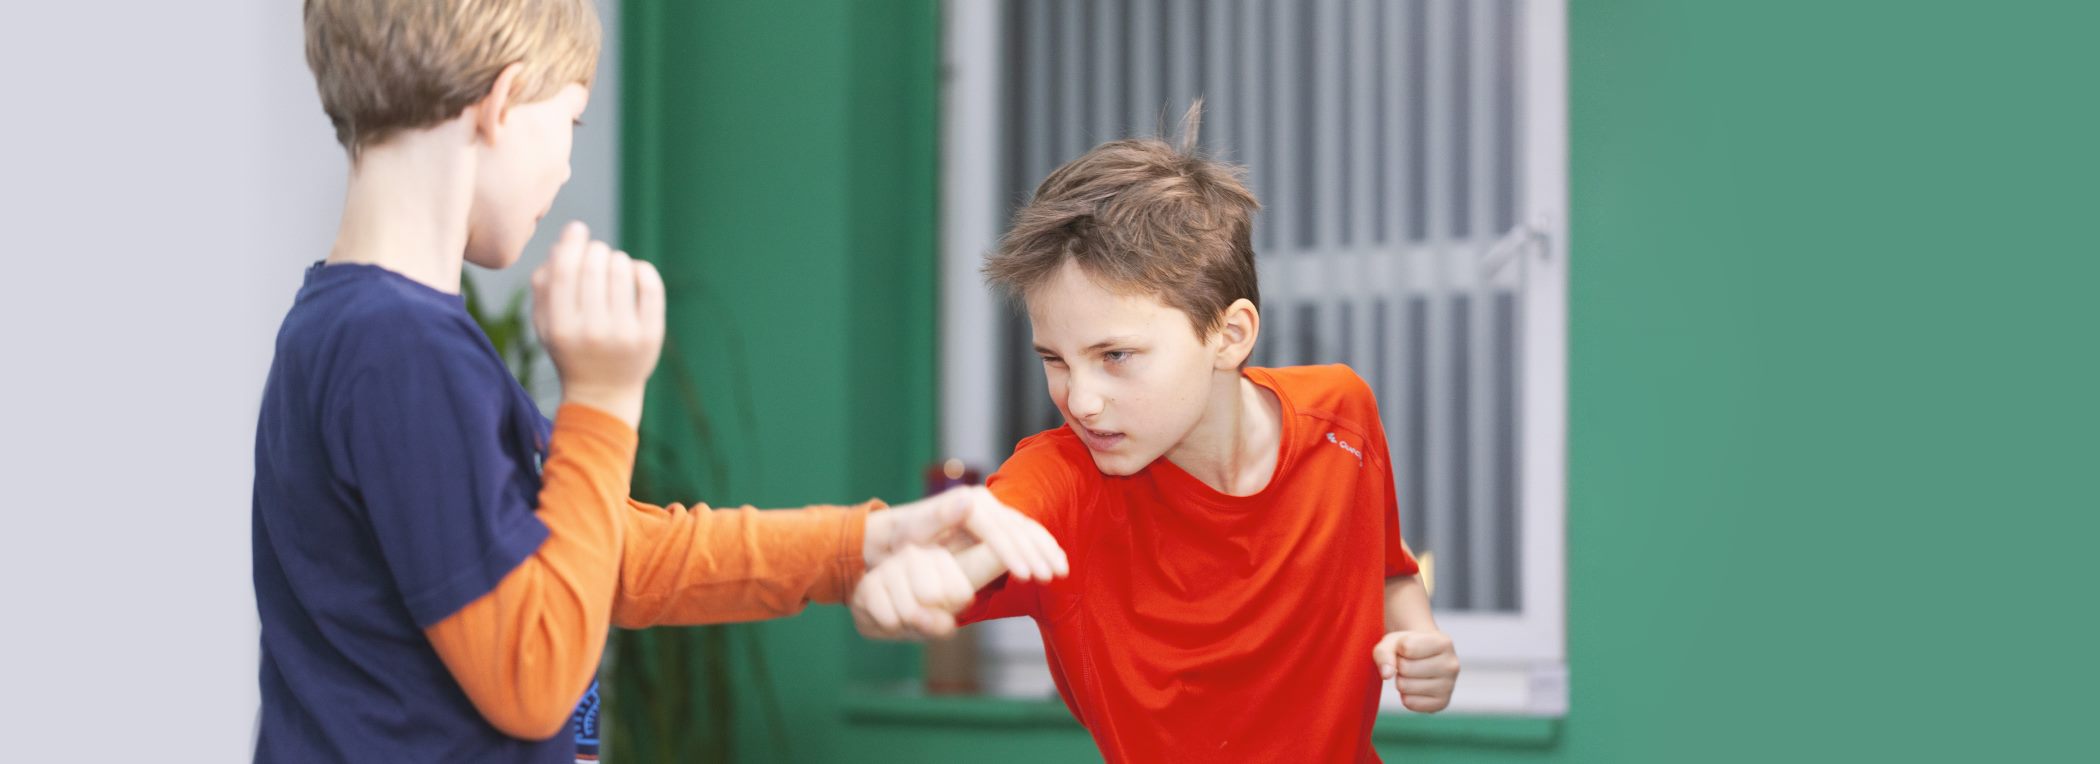 Kindertraining Kickboxen Sanda